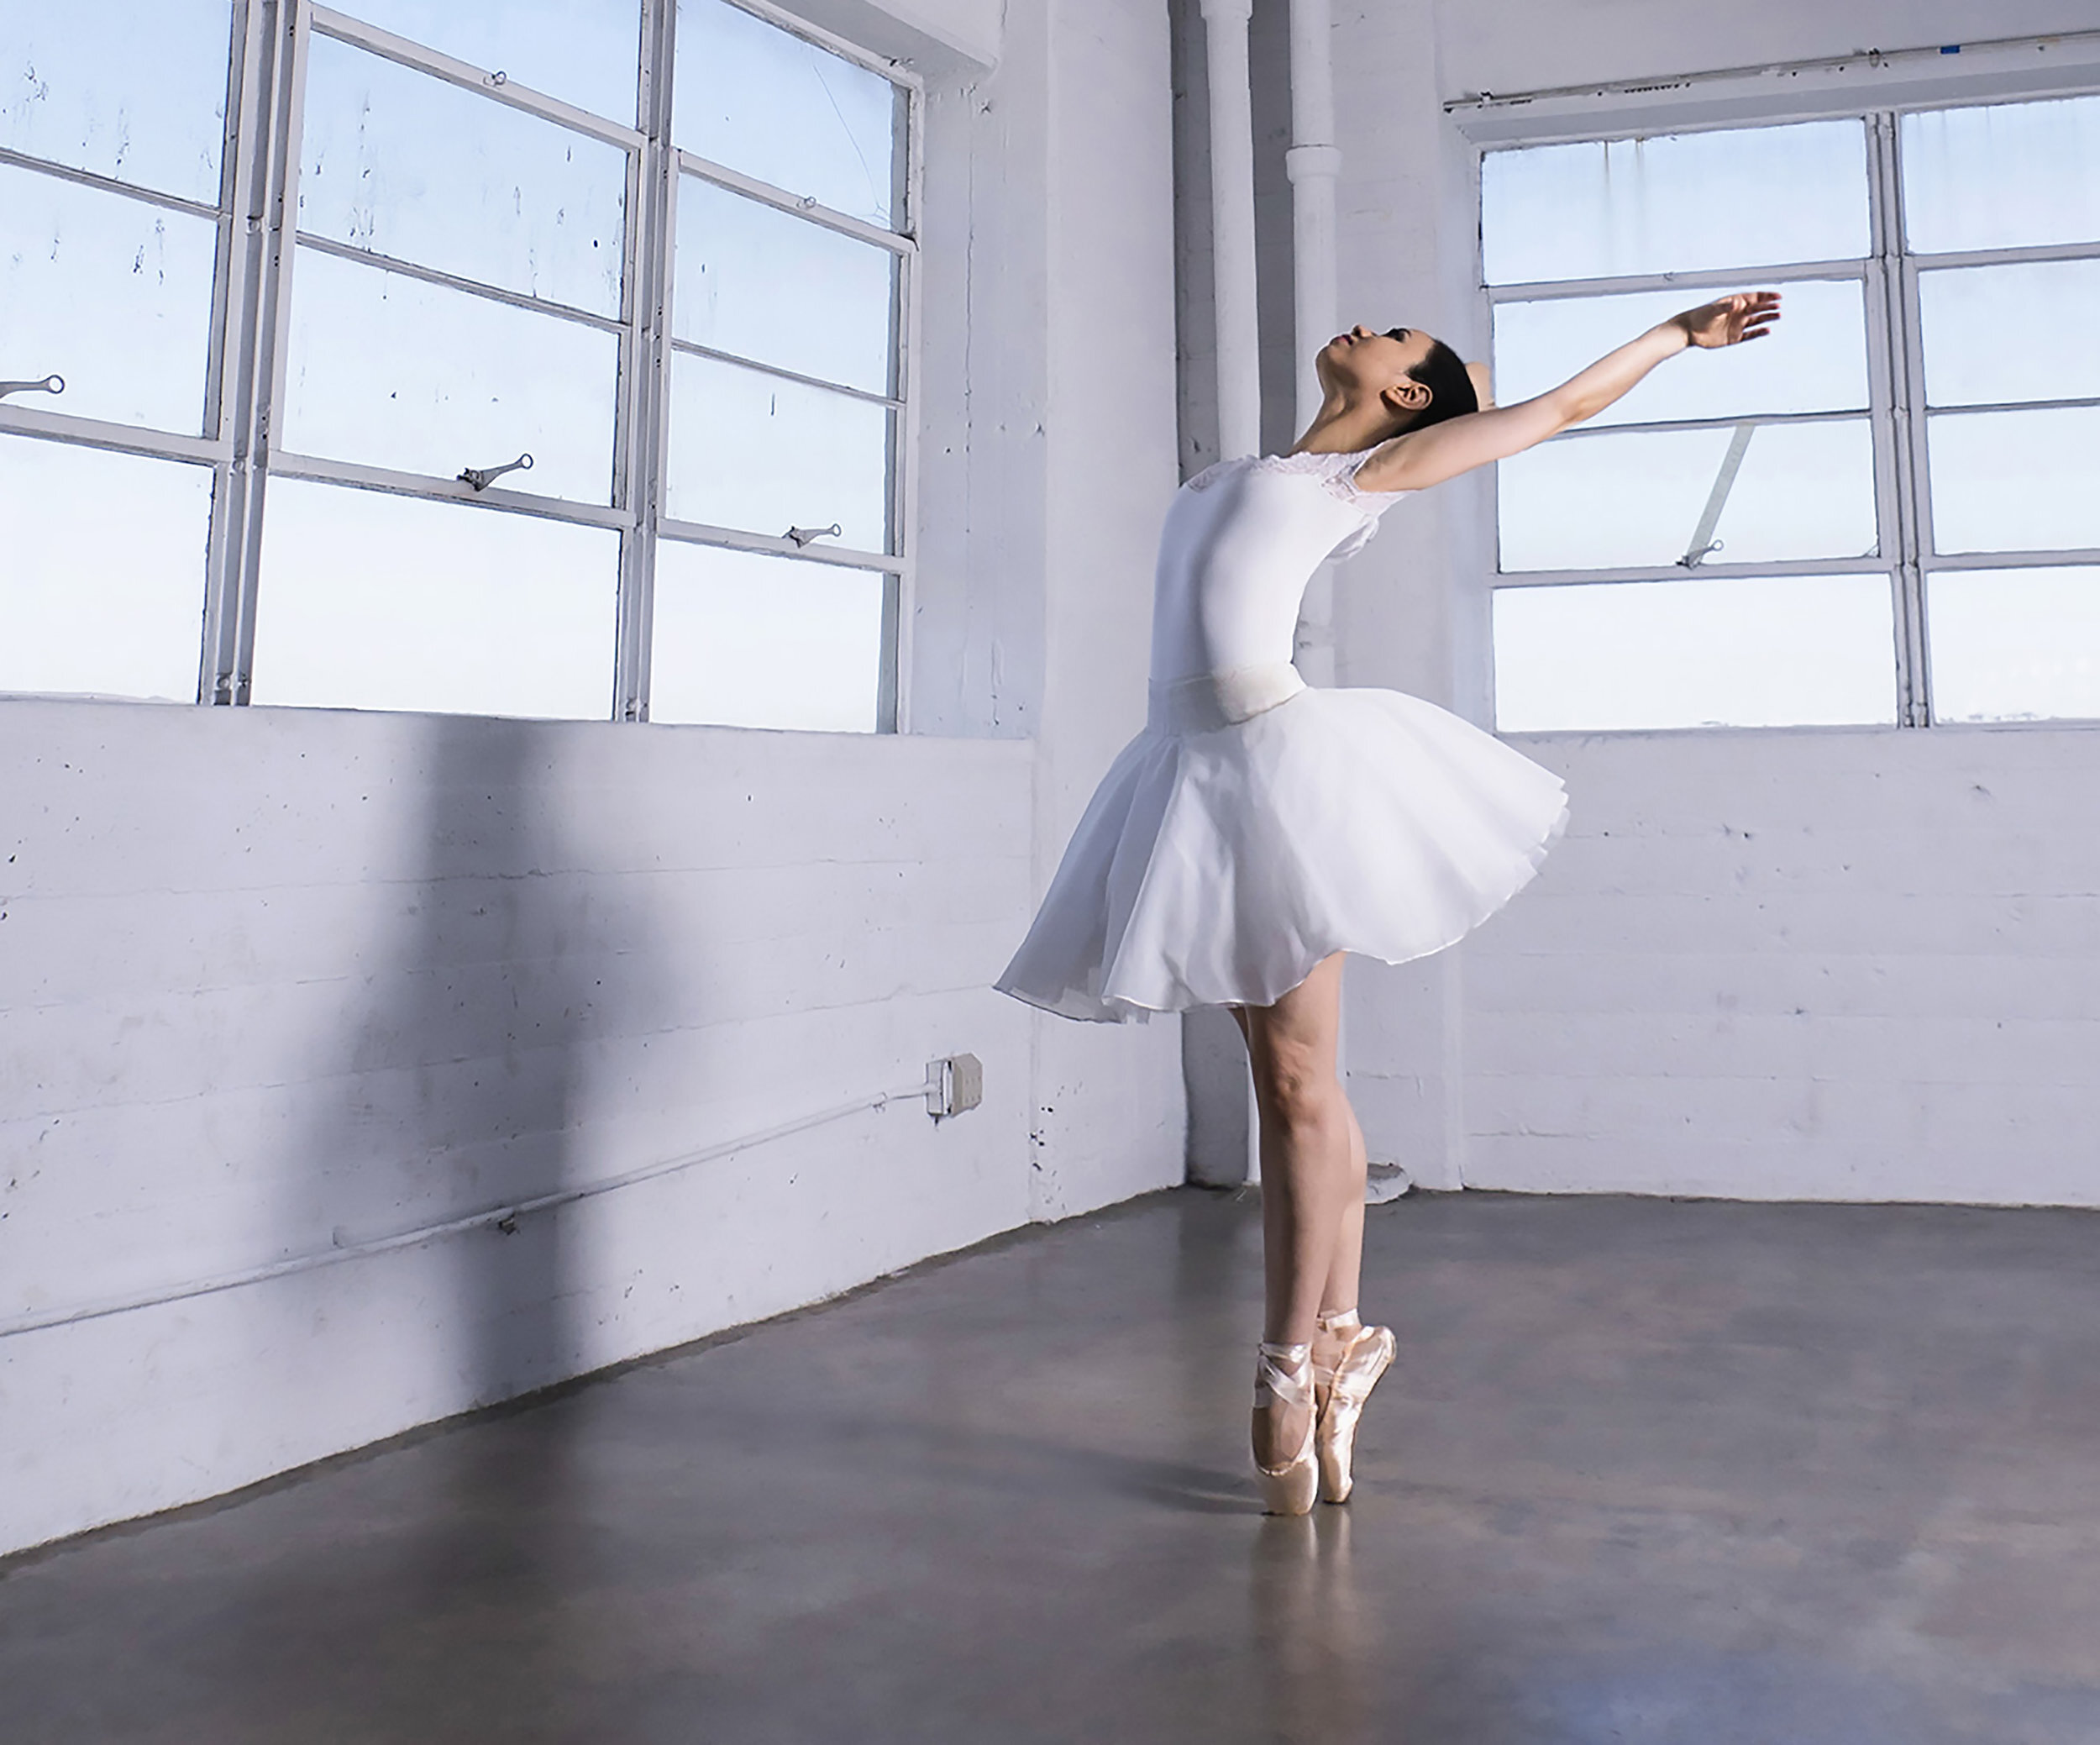 løg Vedholdende Fuld Vegan Ballerina: Agnes Muljadi — Jejune Magazine